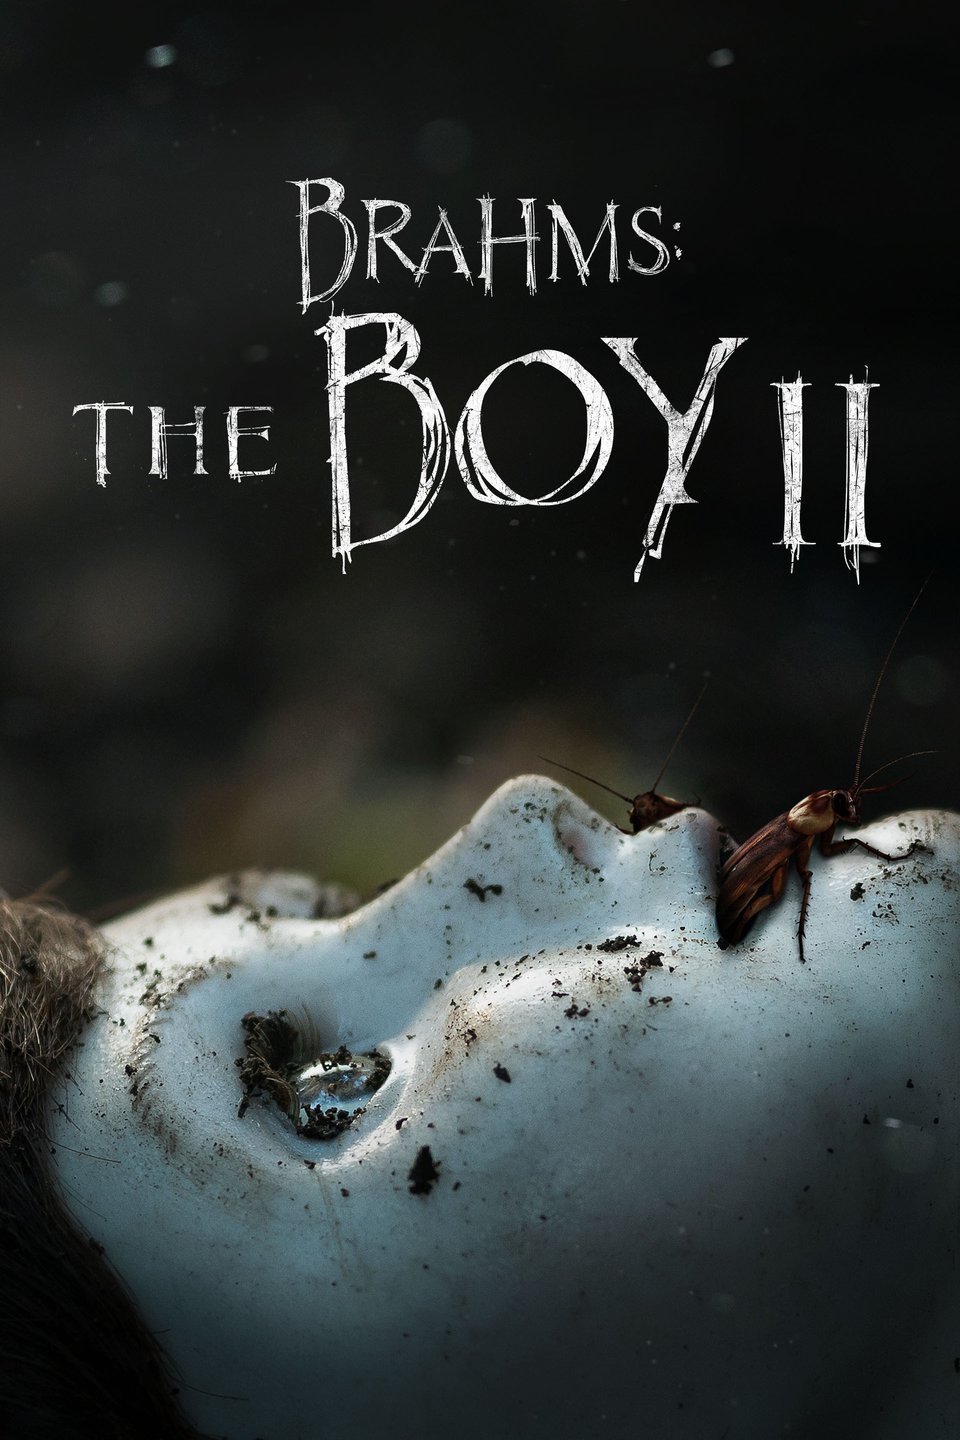 [ฝรั่ง] Brahms: The Boy II (2020) ตุ๊กตาซ่อนผี ภาค 2 [1080p] [พากย์ไทยโรง 5.1 + เสียงอังกฤษ 5.1] [บรรยายอังกฤษ] [เสียงไทยโรง + ซับอังกฤษ] [PANDAFILE]